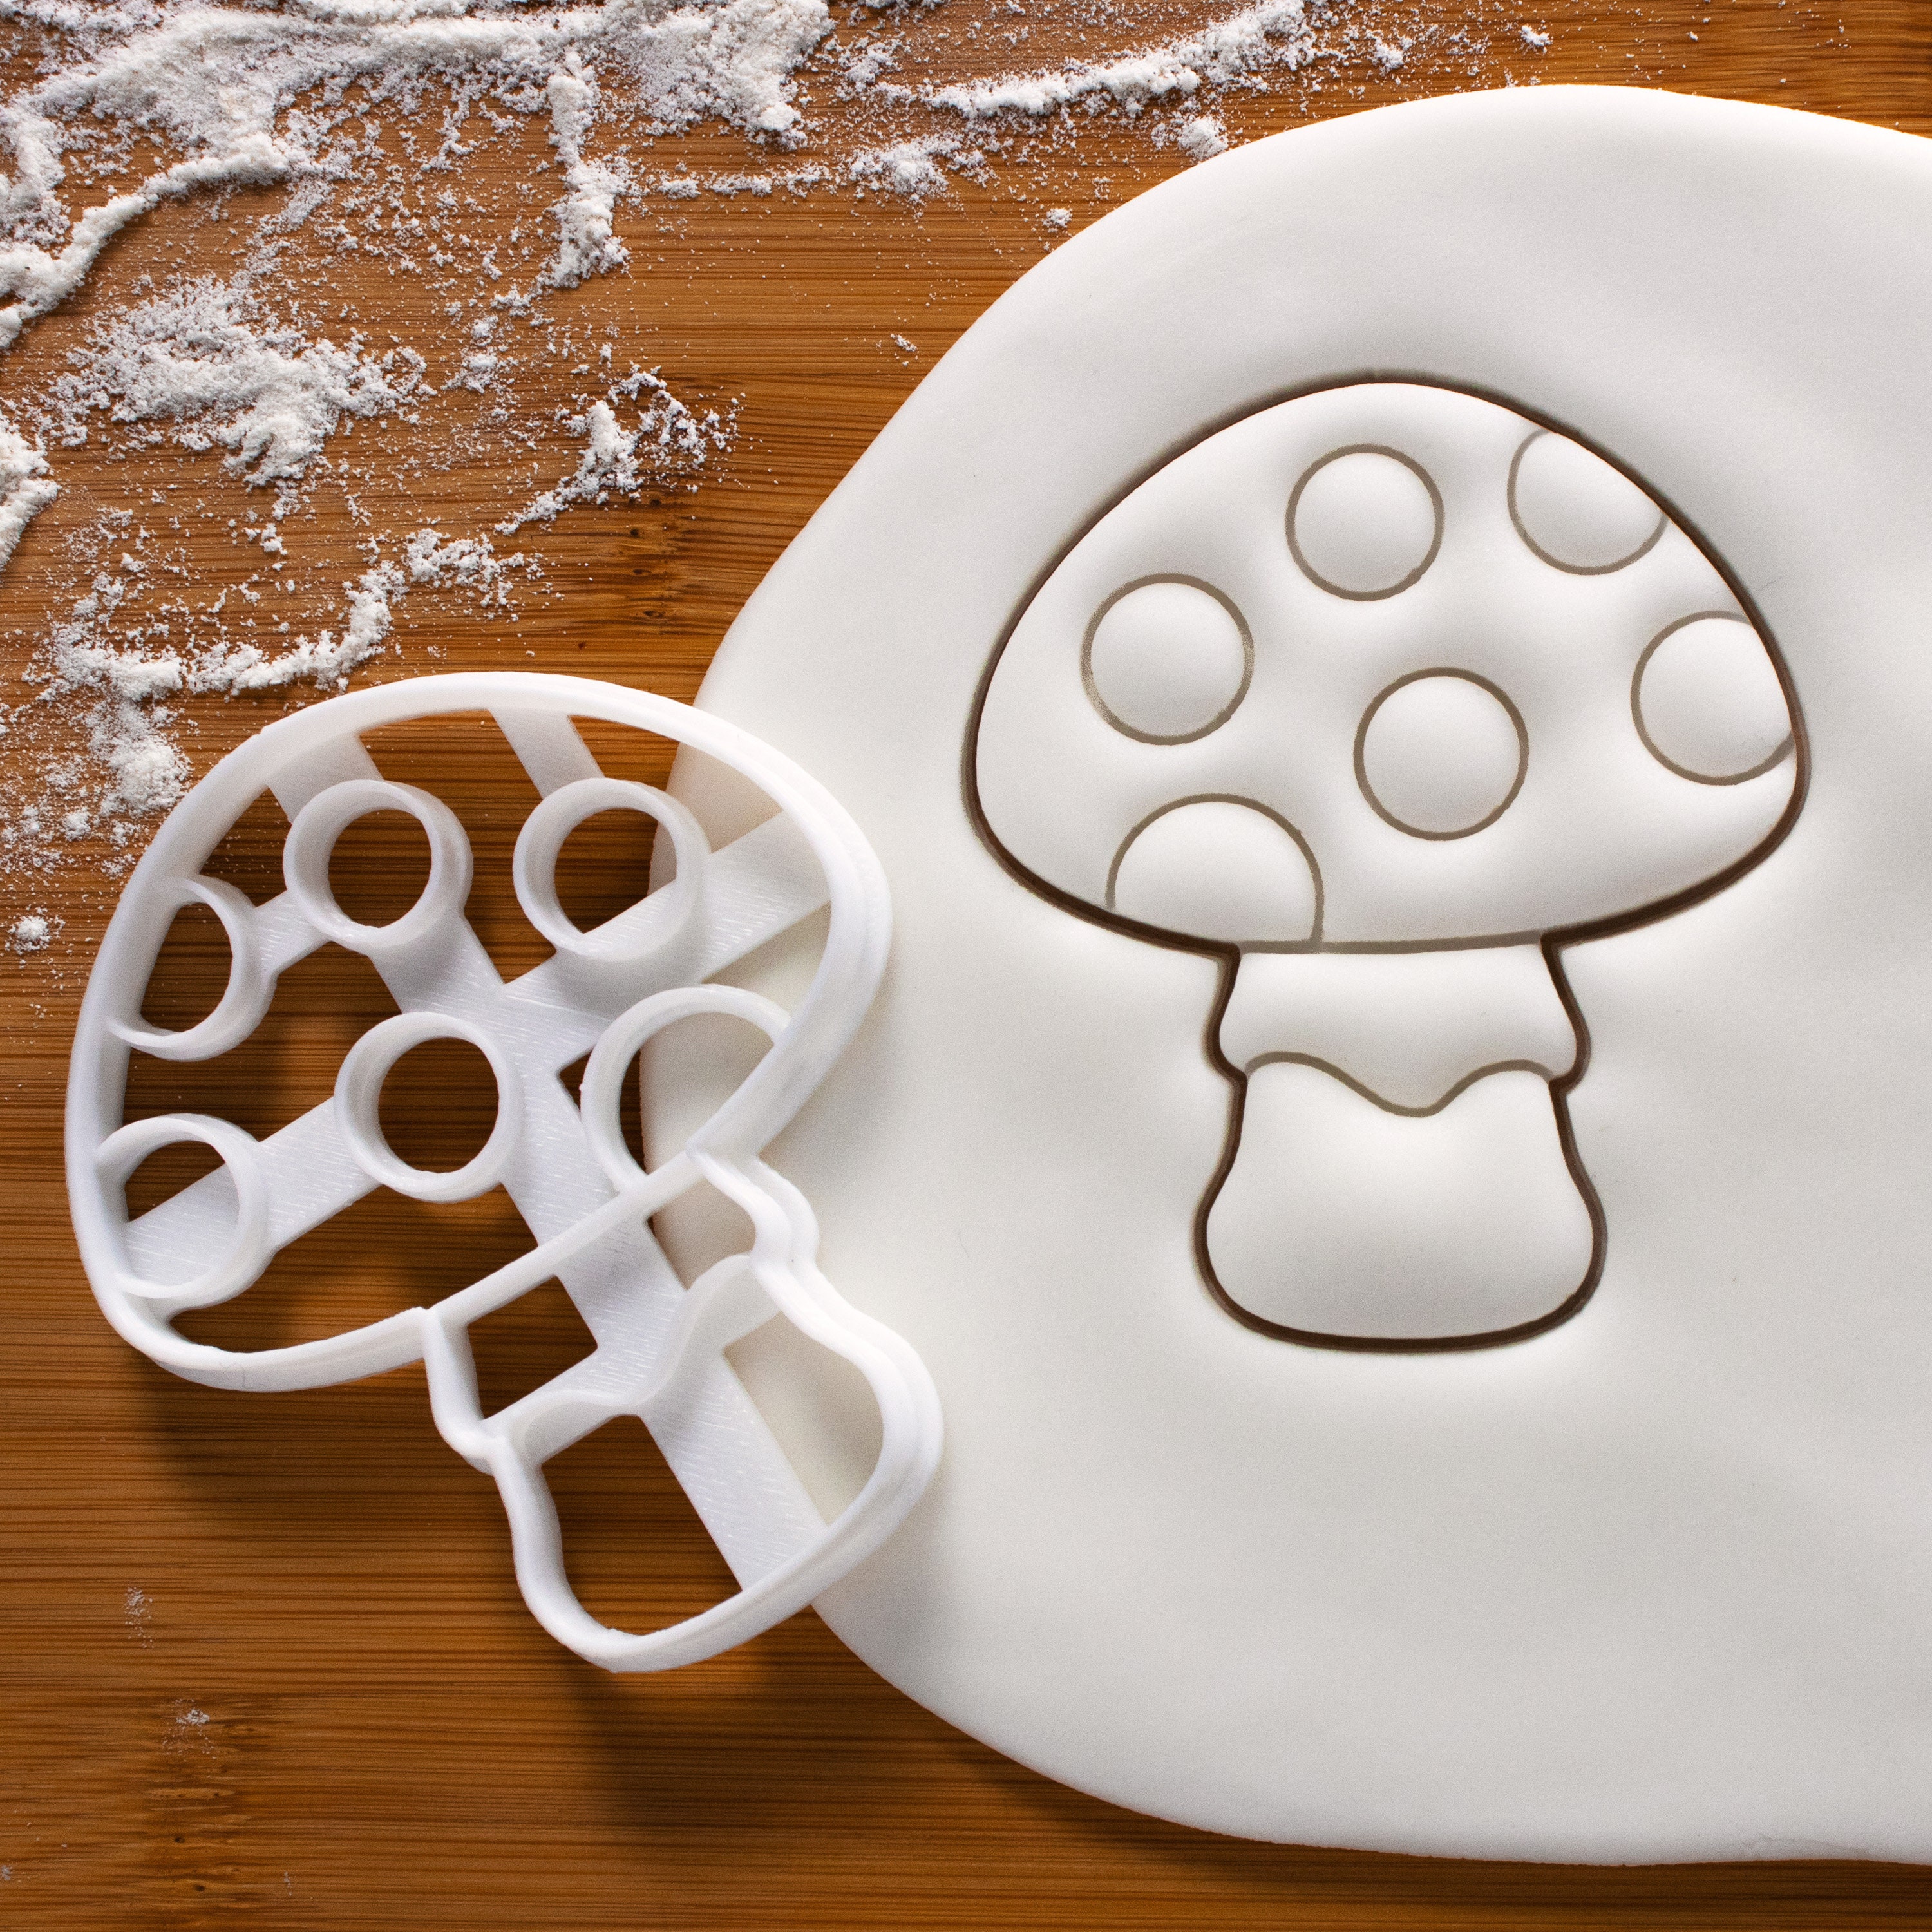 Mushroom Cookie Cutter – The Flour Box